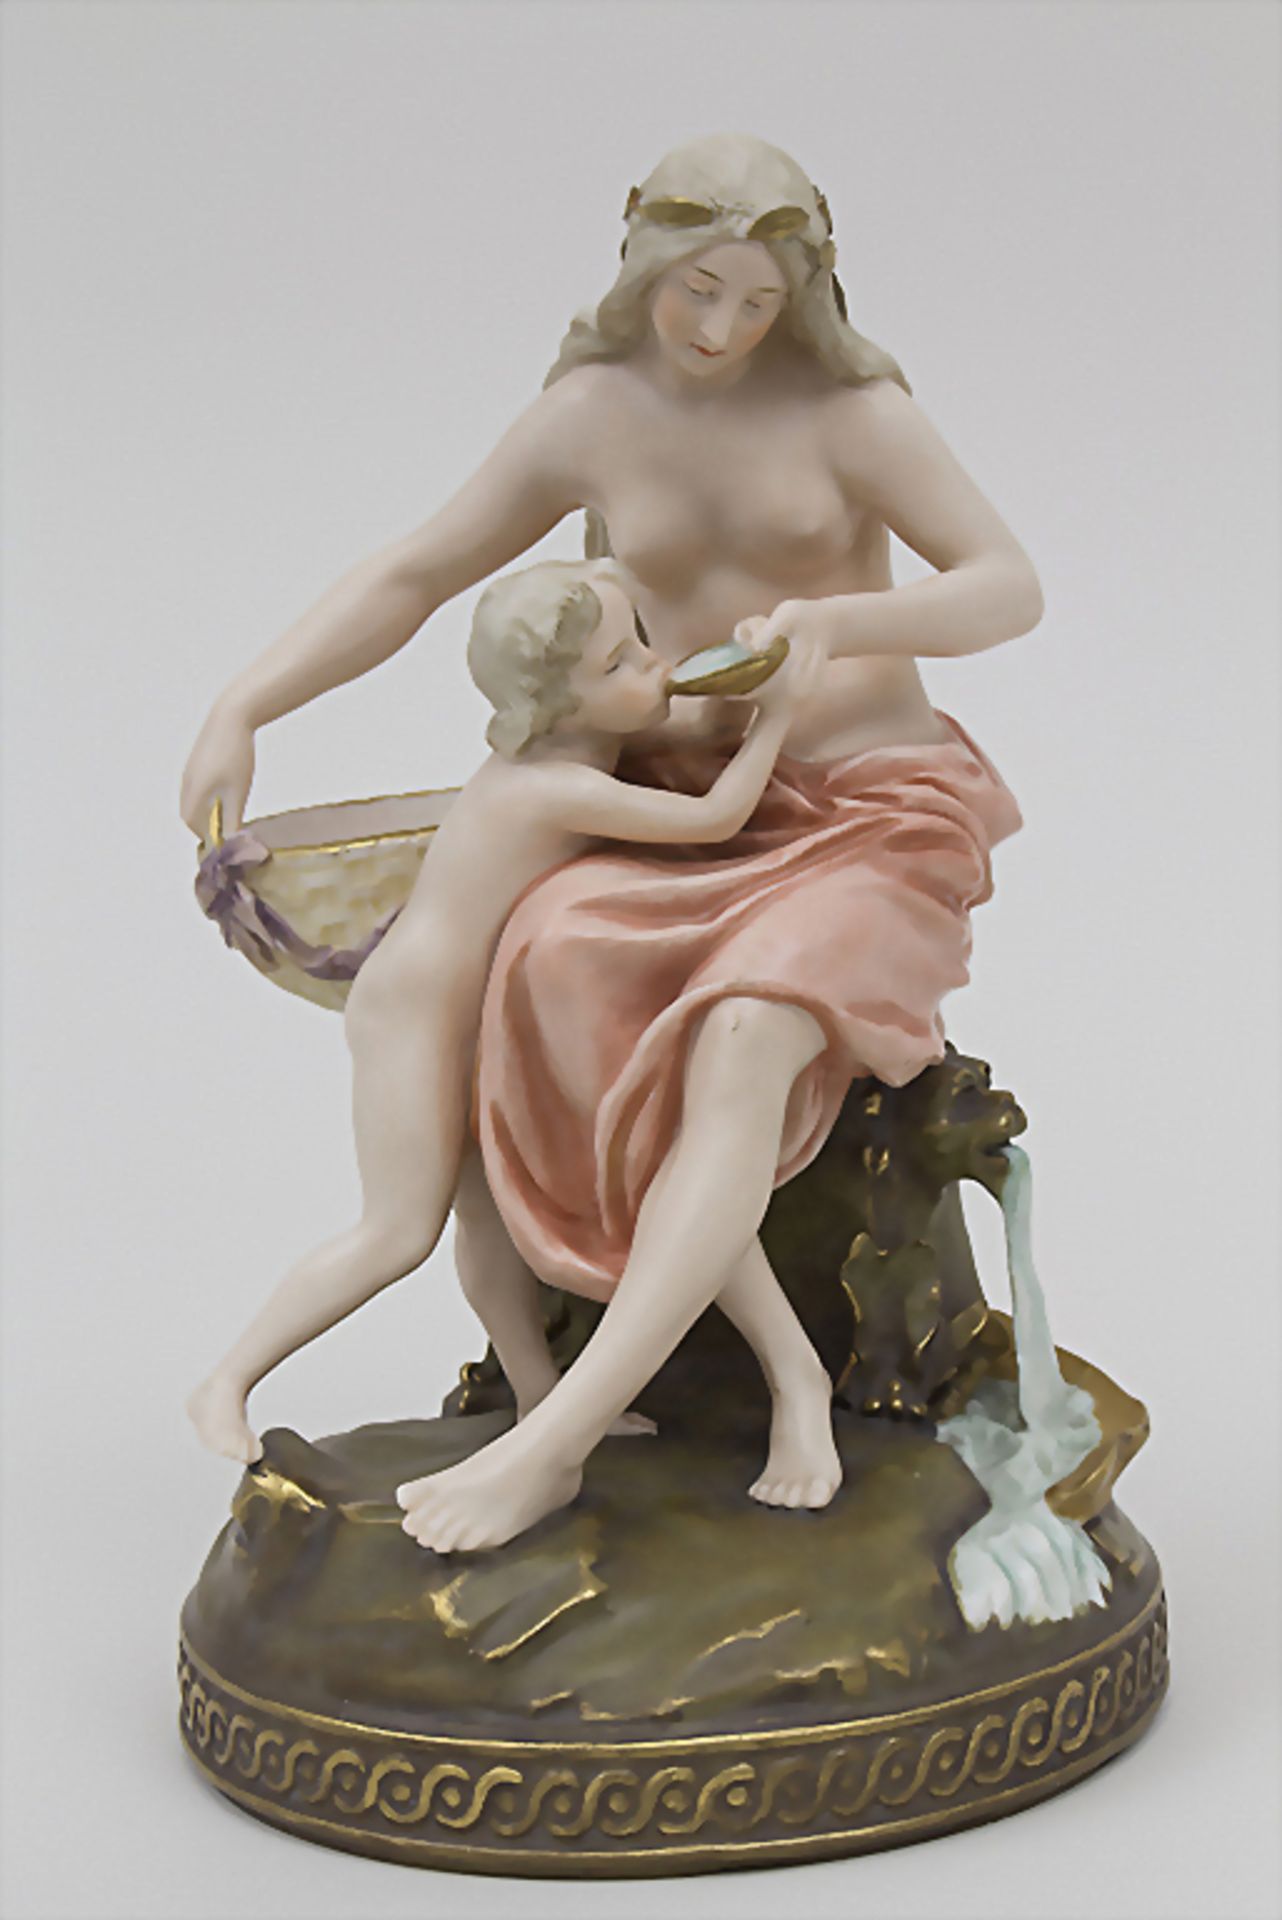 Jugendstil Figurengruppe 'Nymphe am Brunnen' / An Art Nouveau figural group, wohl Ernst Wahliss,